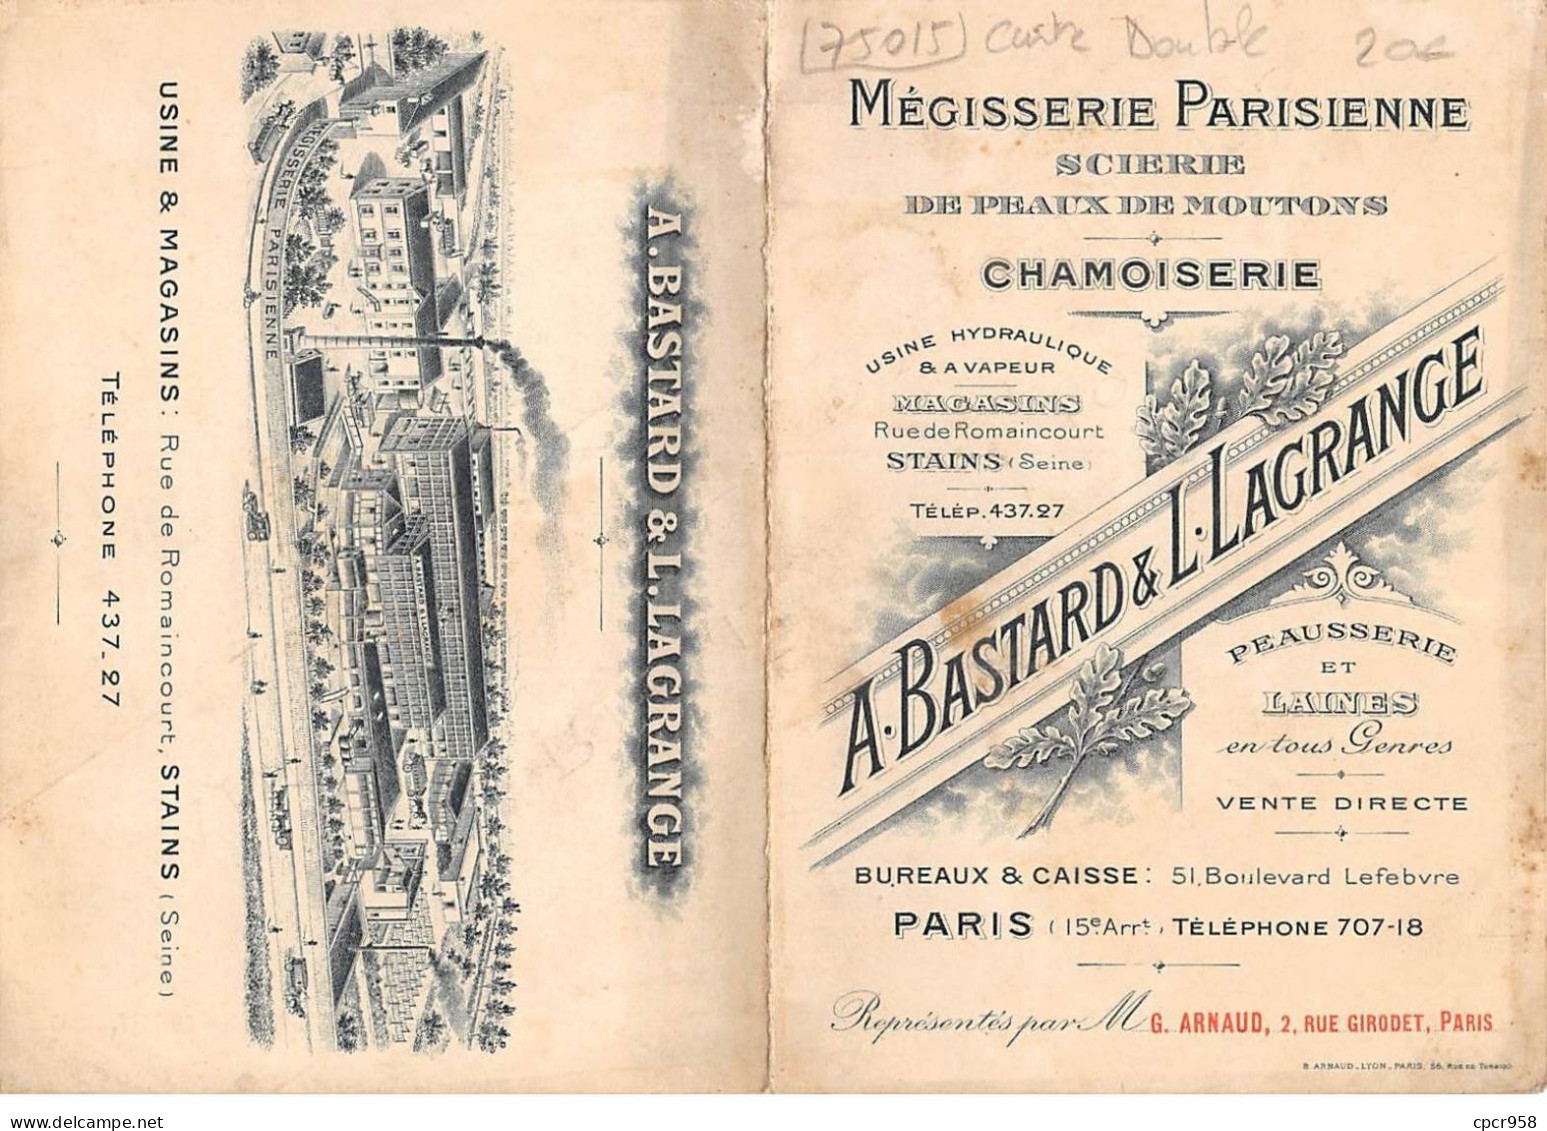 75015 - N°82243 - PARIS - Mégisserie Parisienne Scierie De Peaux De Moutons A. Bastard & L. Lagrange - Carte Double - Arrondissement: 15